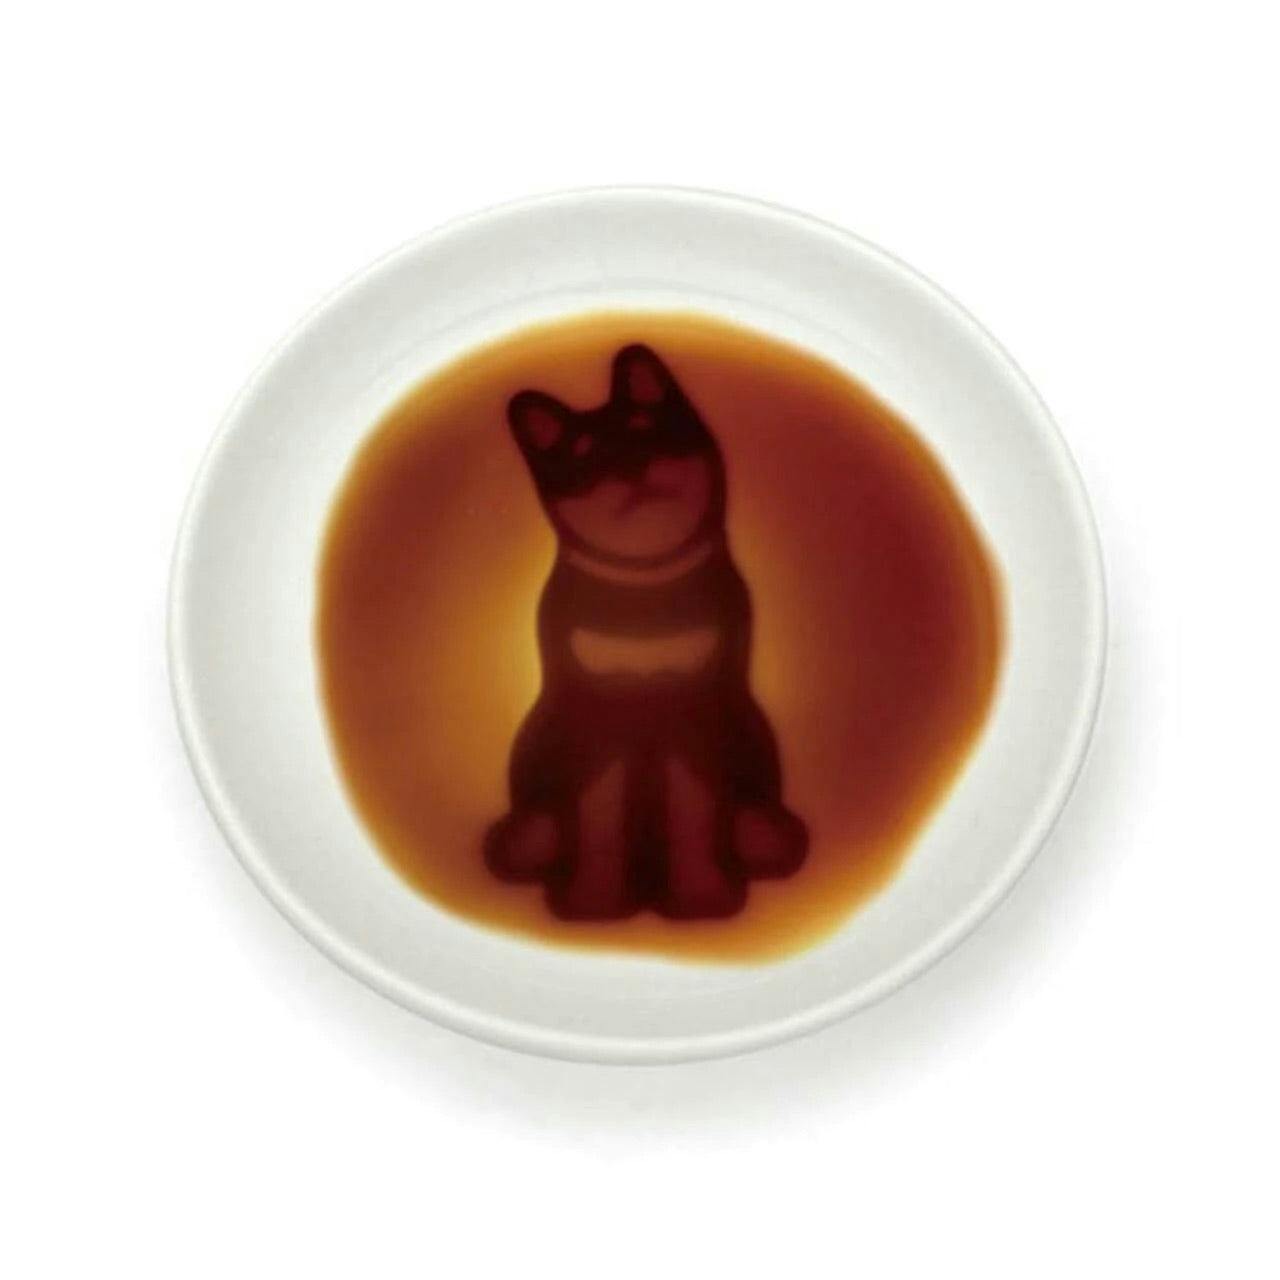 狗狗 酱油碟 [NEW] Alta Sitting Dog Soy Sauce Dish 3.54" dia【日本进口】